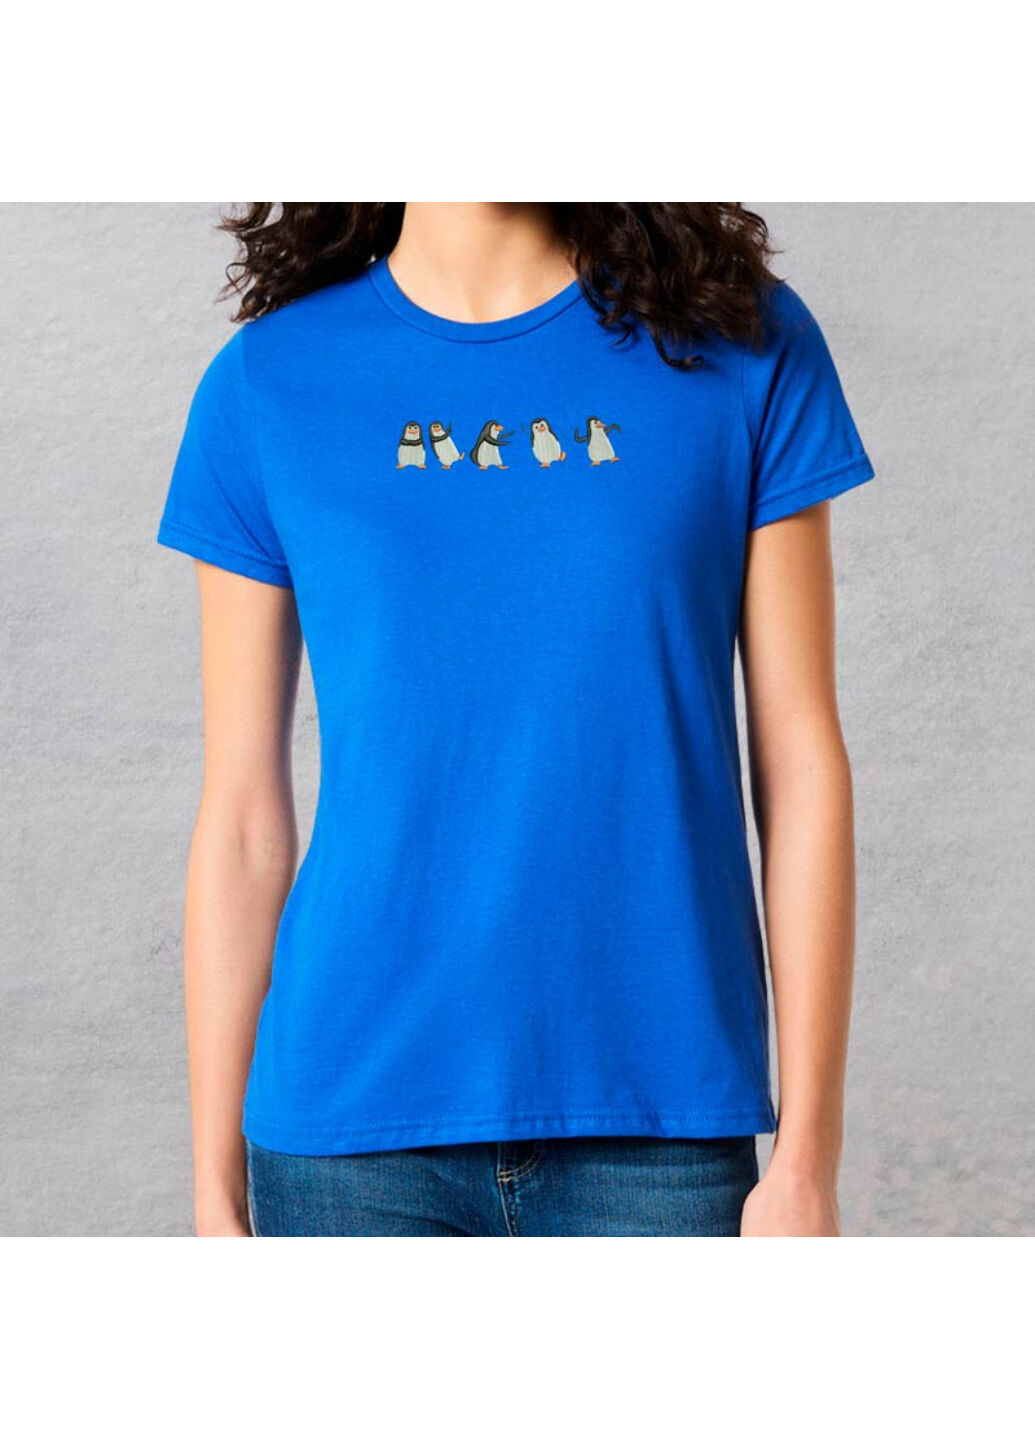 Синя футболка з вишивкою пінгвінів 02-3 жіноча синій xl No Brand